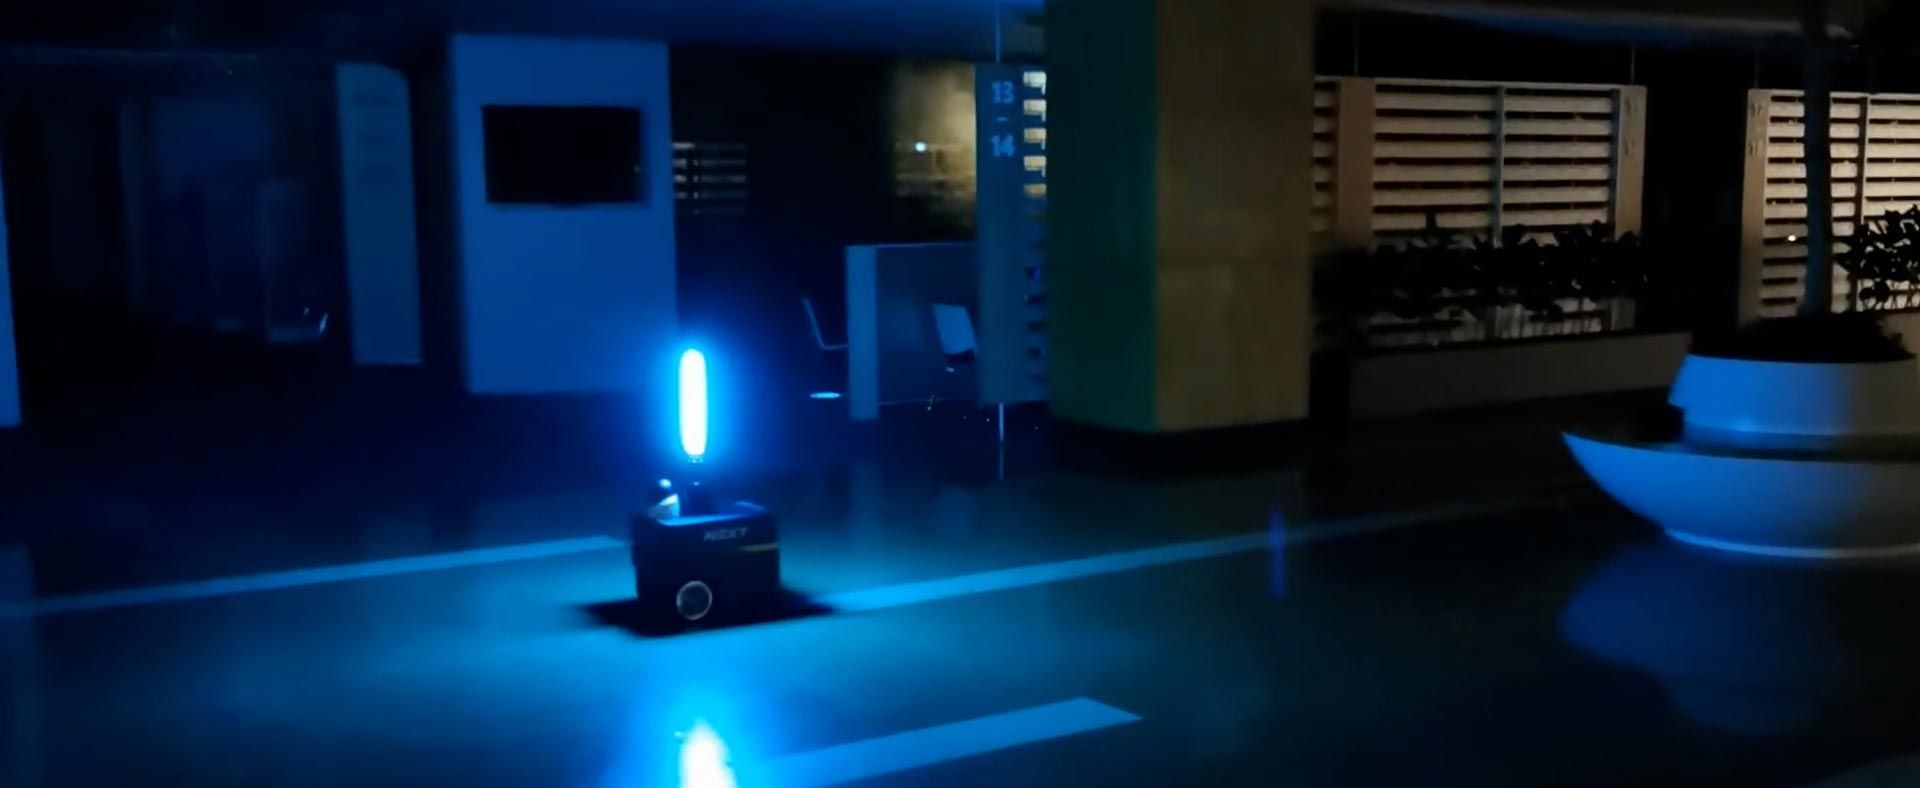 商业空间内的自主机器人，带有安装的UV光消毒建筑内部。